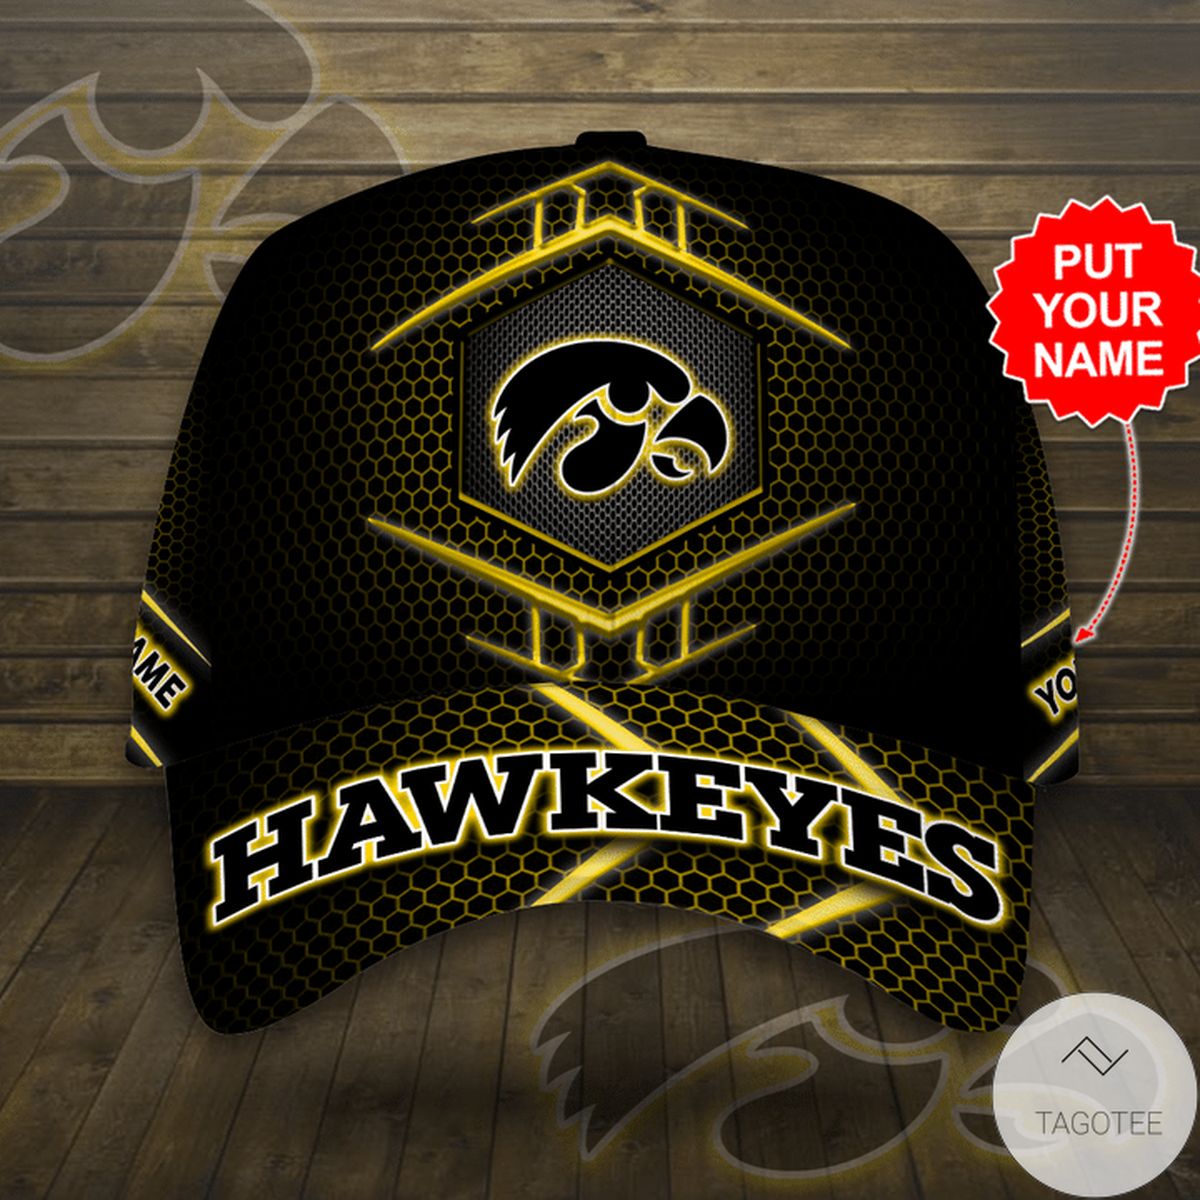 Personalized Iowa Hawkeyes Cap